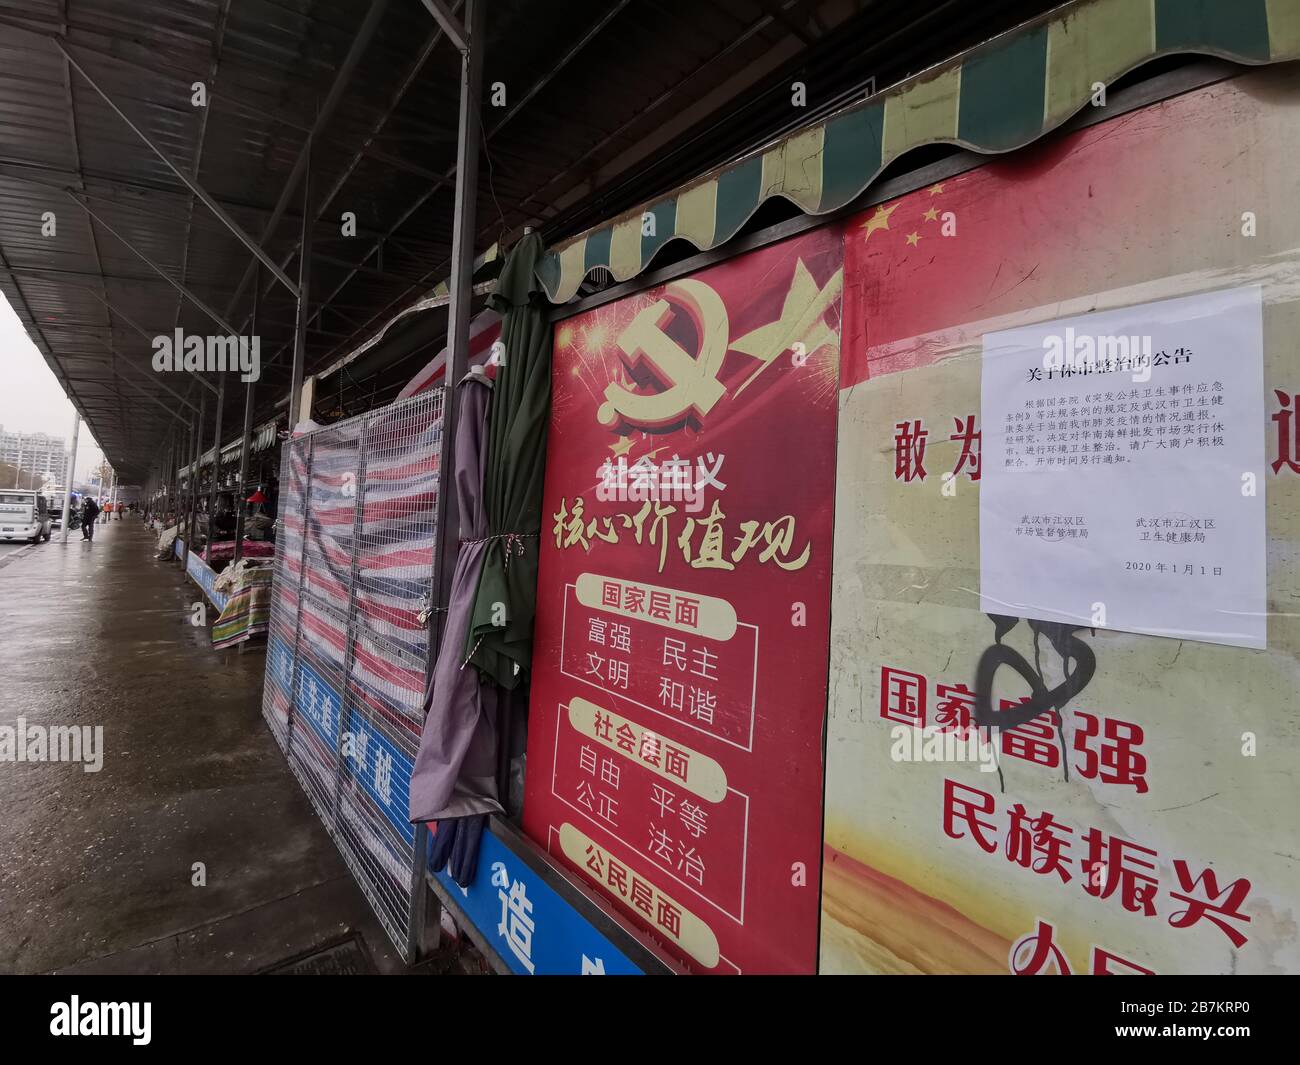 Vue sur le marché fermé des fruits de mer de Wuhan Huanan à Hankou, ville de Wuhan, province de Hubei en Chine centrale, 1er janvier 2020. Banque D'Images